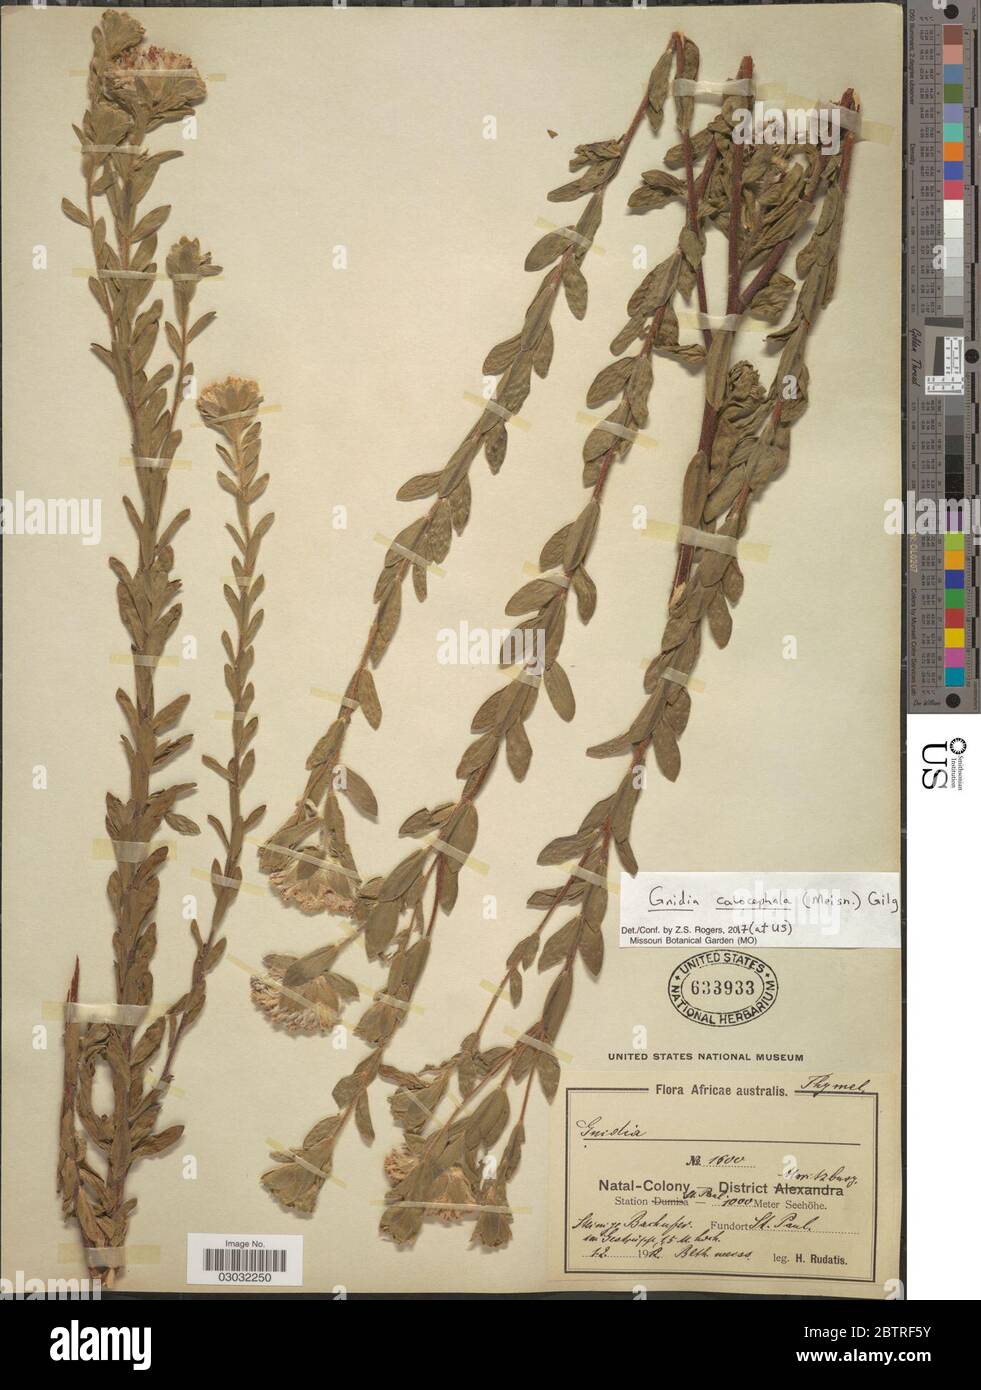 Gnidia calocephala Meisn Gilg. Stock Photo